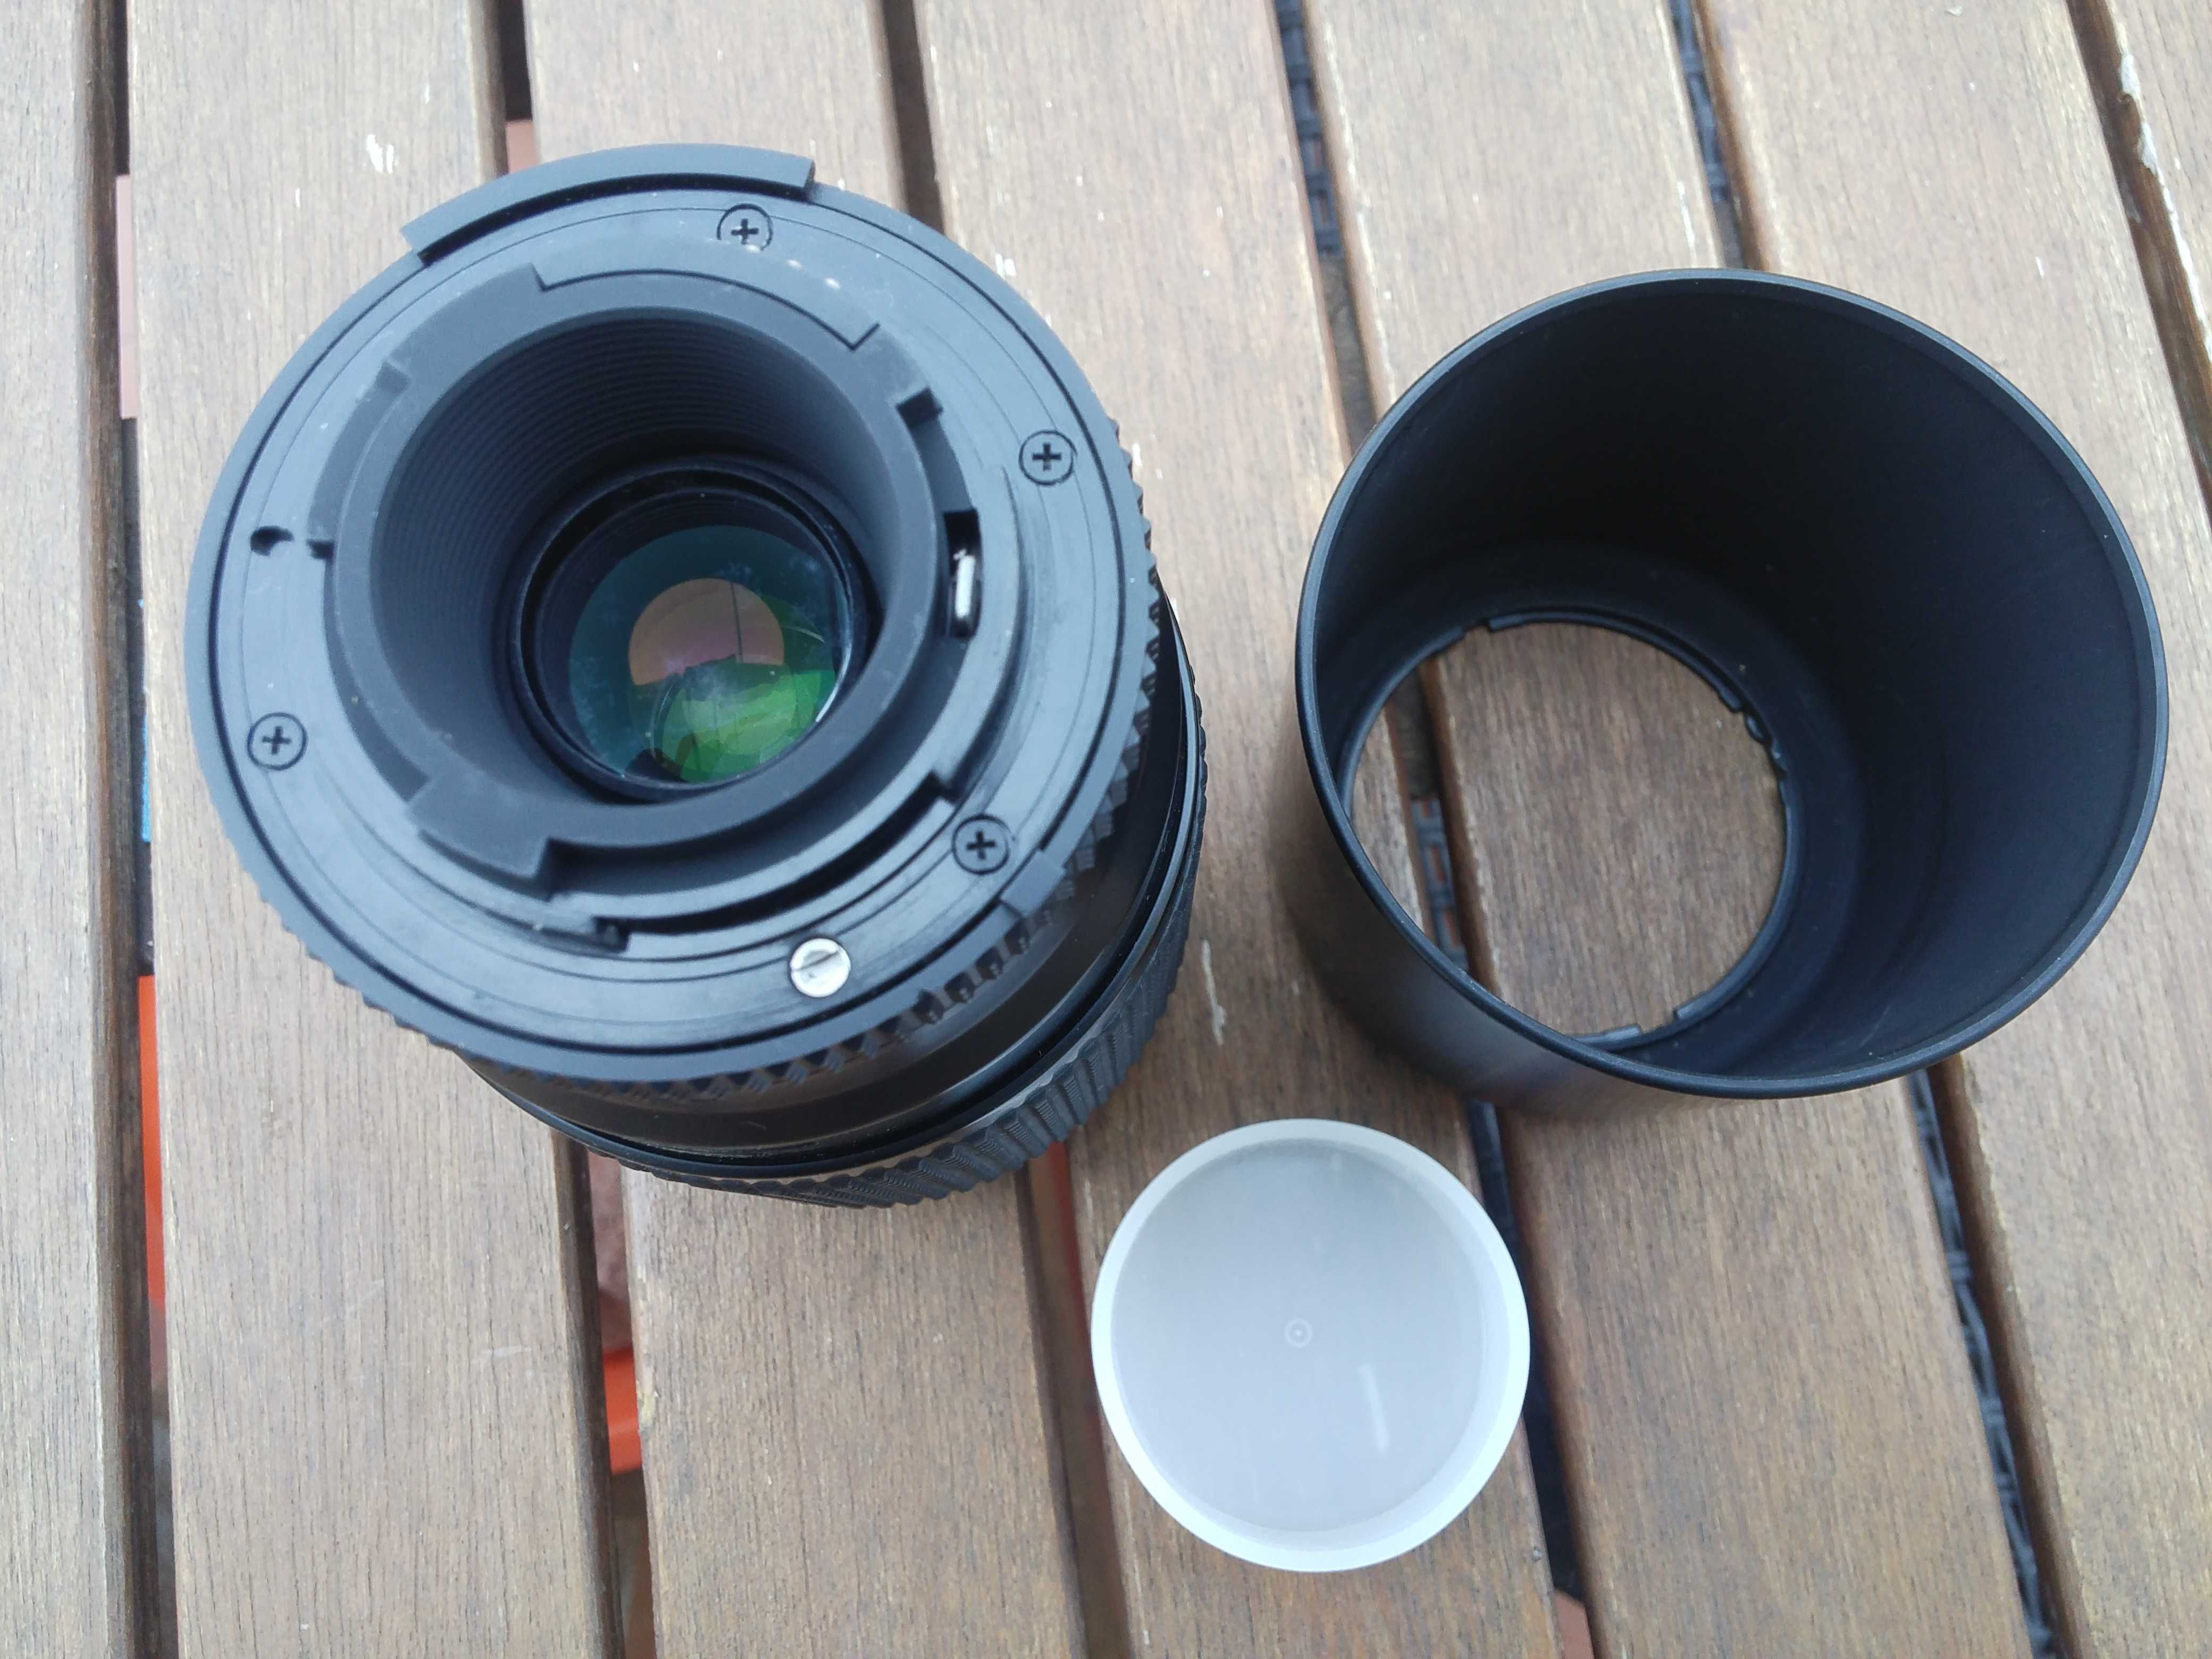 Objetiva Nikon AutoFocus (AF) Zoom Nikkor 75-240mm f4.5-5.6D